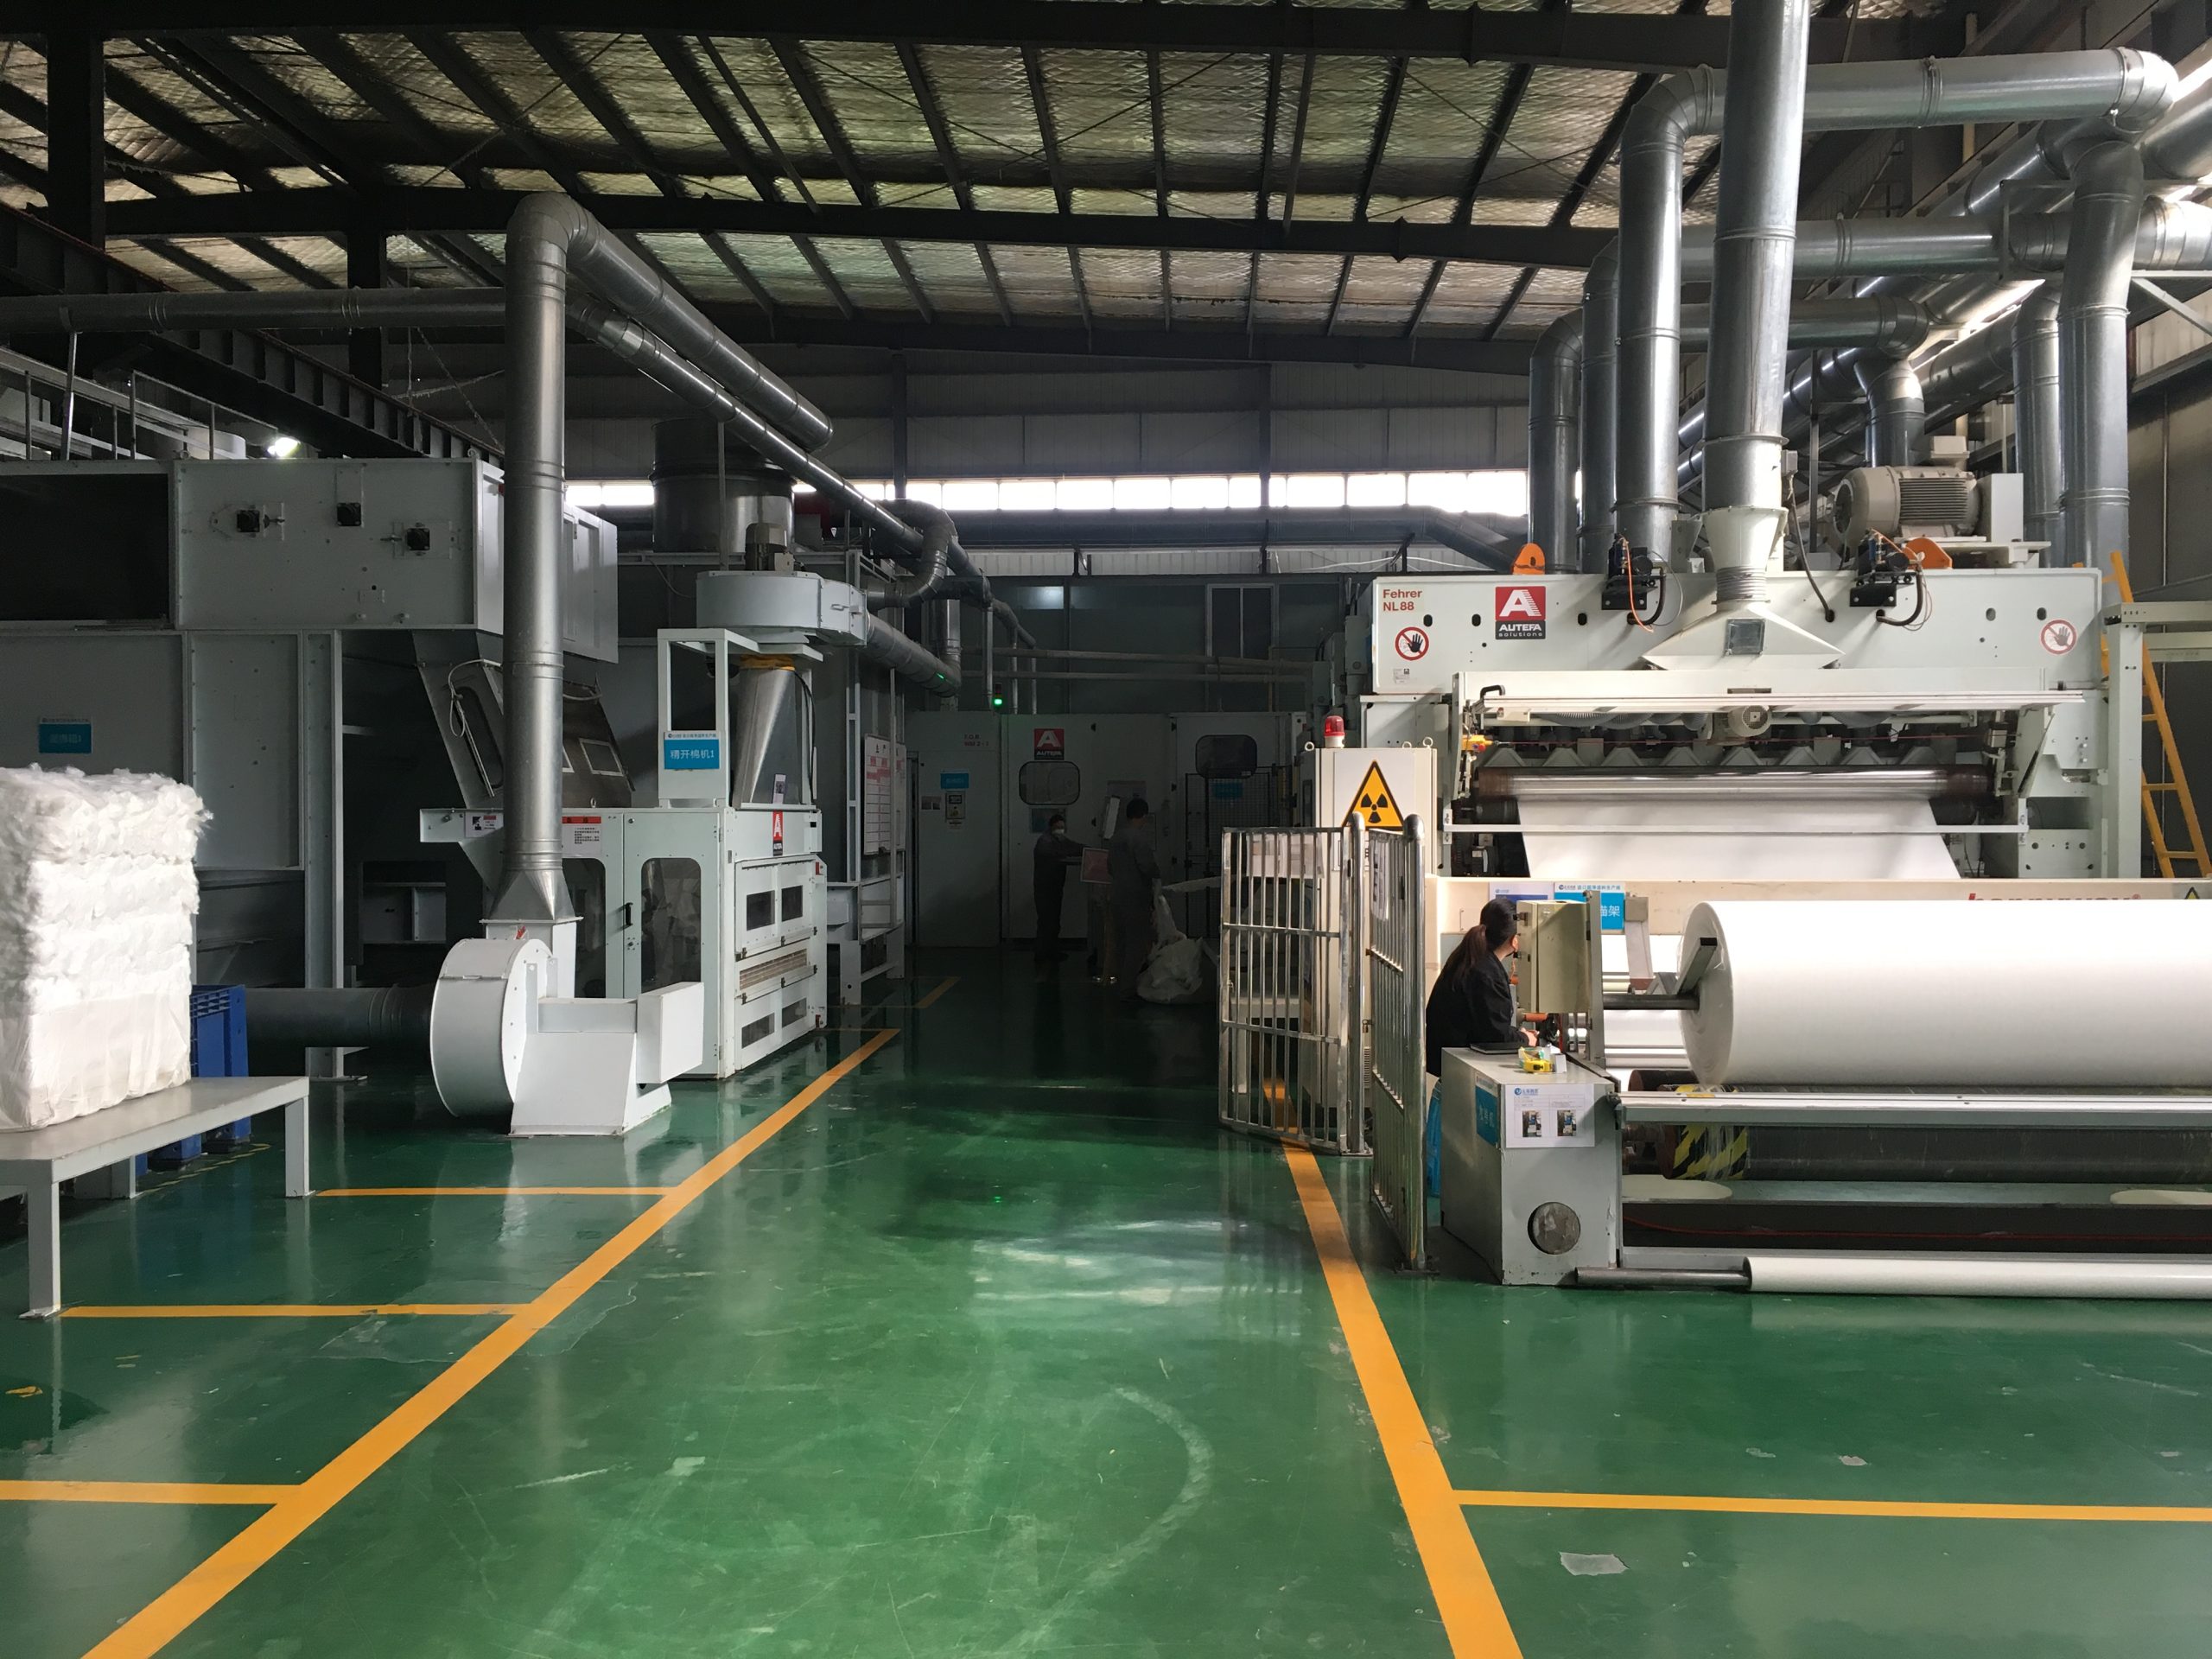 Это изображение производственного объекта на фабрике Yuanchen, демонстрирующее полную линию по производству иглопробивного войлока производства AUTEFA Solutions Germany.